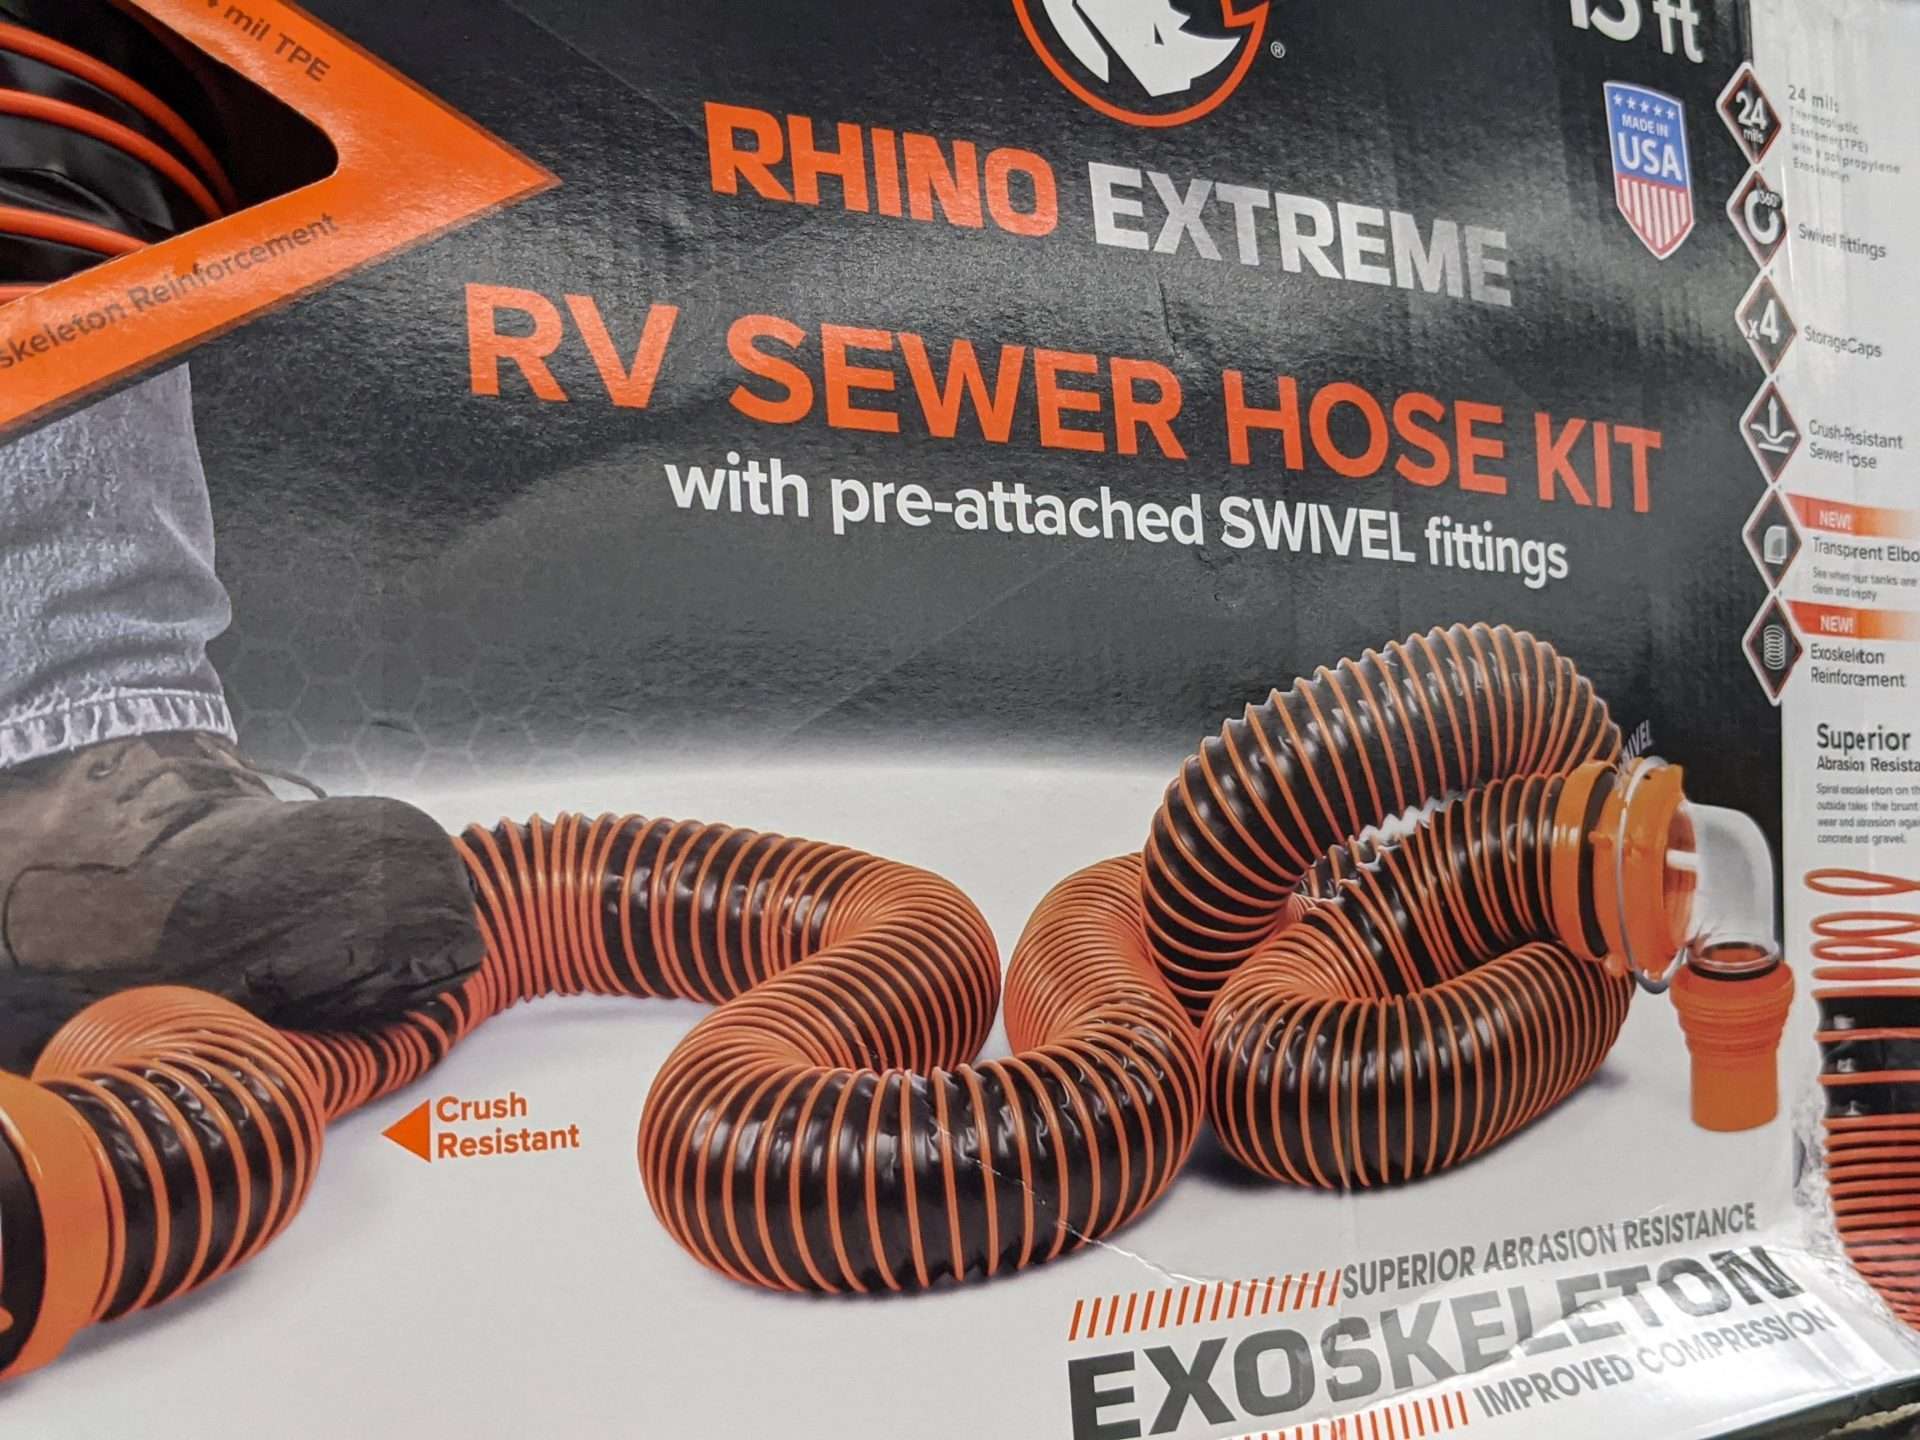 ExoSkeleton RV sewer hose kit product on store shelf